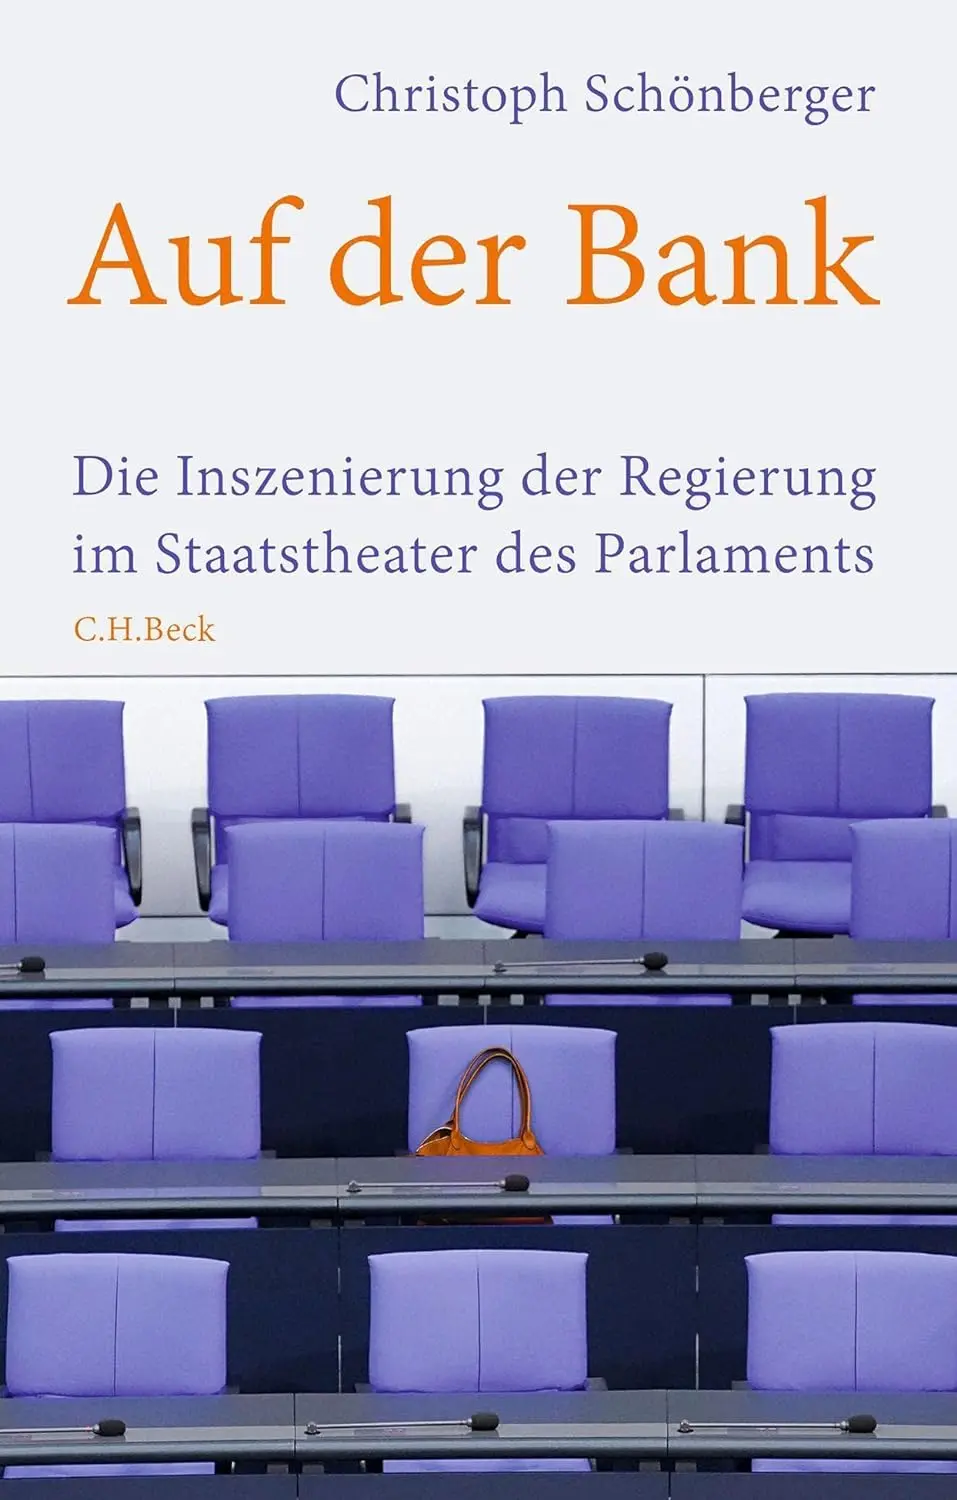 Buchcover: Auf der Bank von Christopher Schönberger